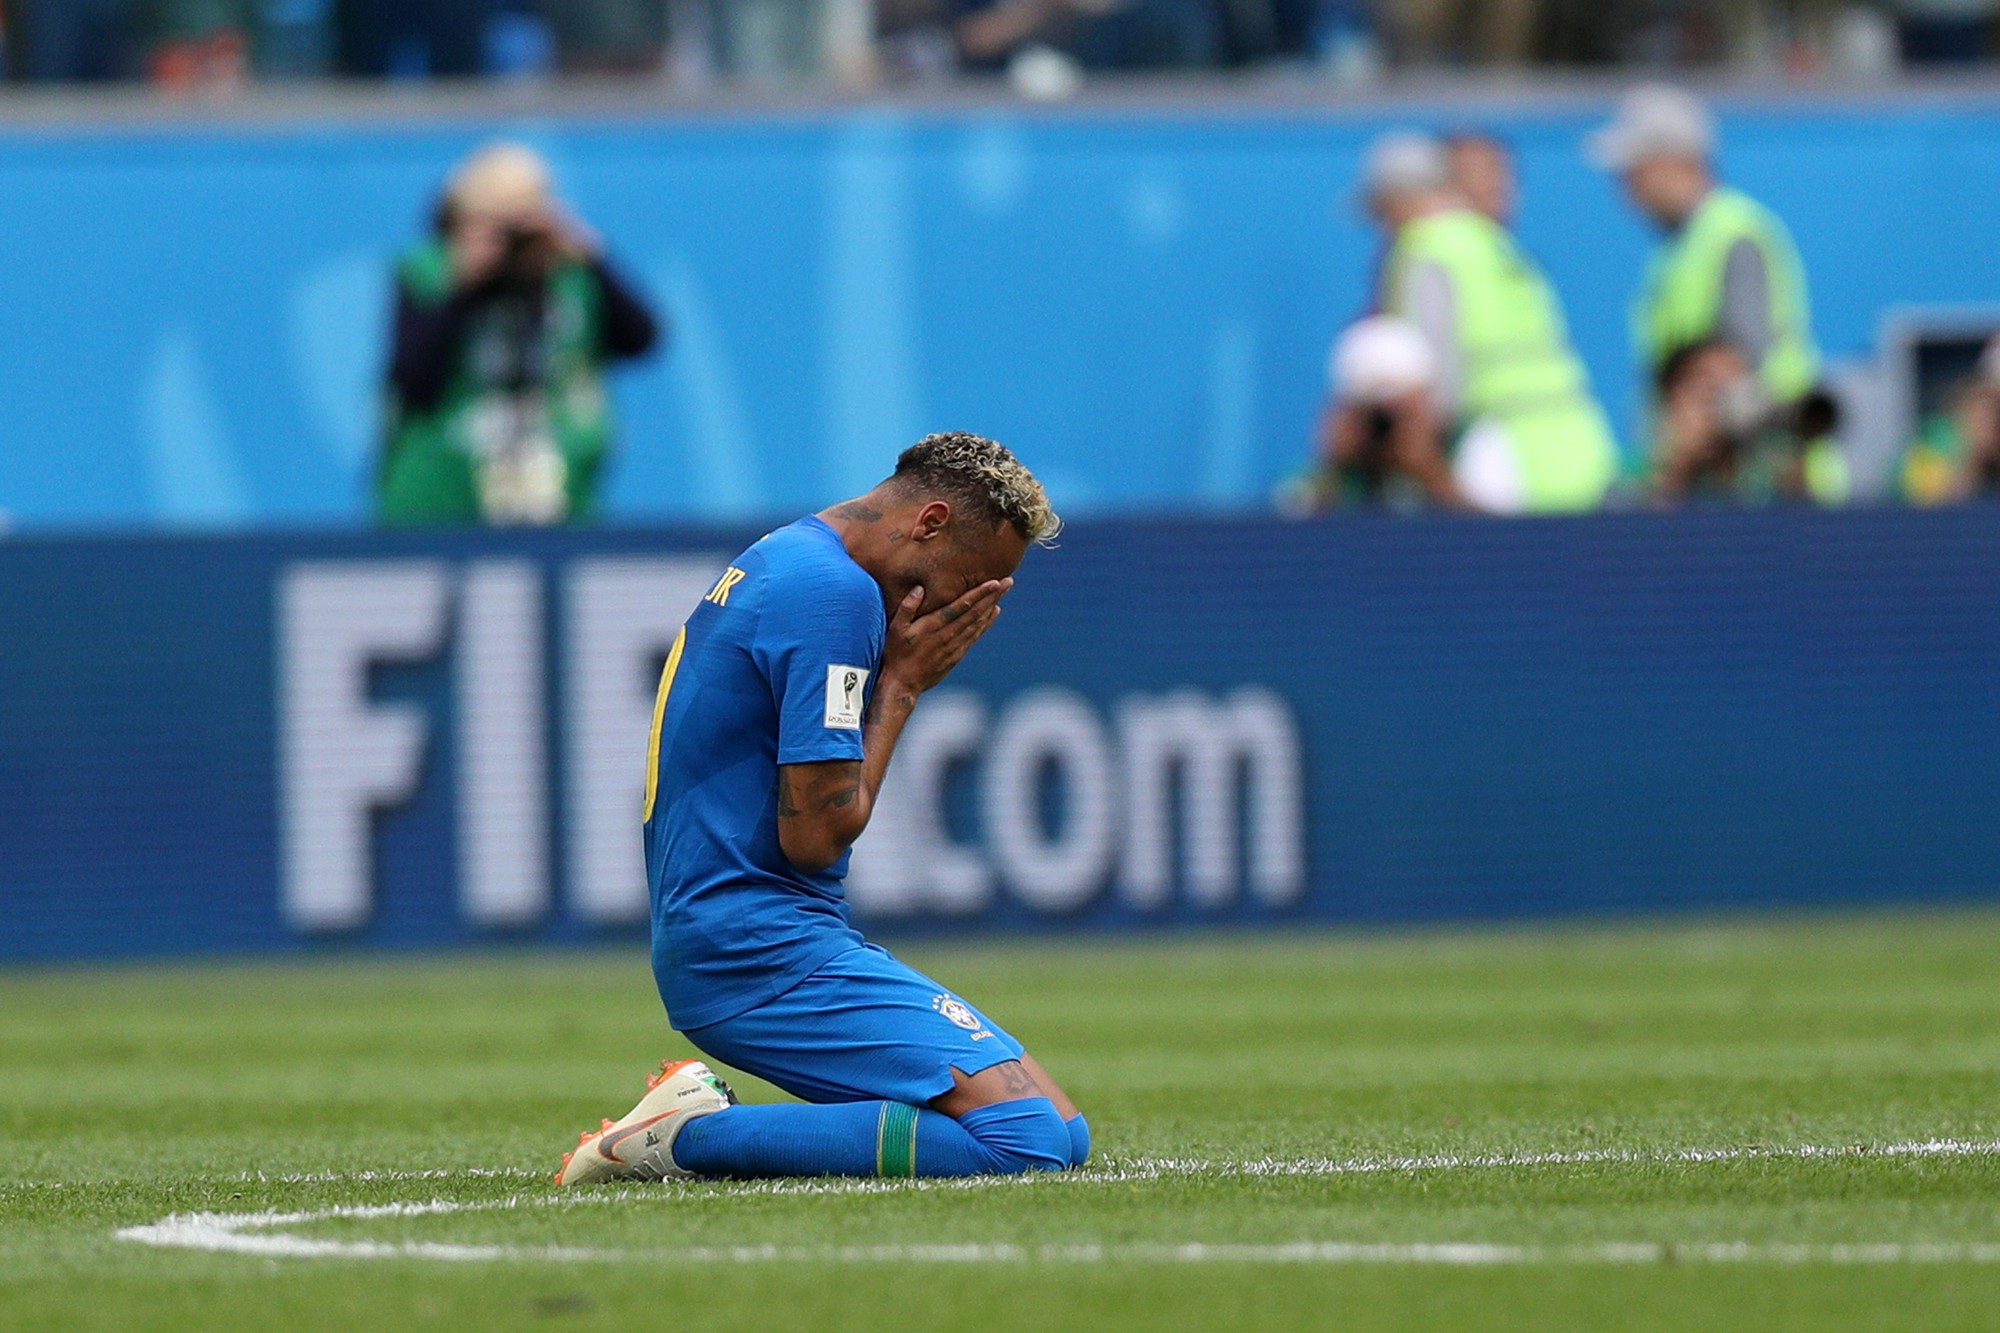 Neymar quỳ gối, ôm mặt khóc nức nở sau khi ghi bàn thắng phút 90+7 - Ảnh 1.